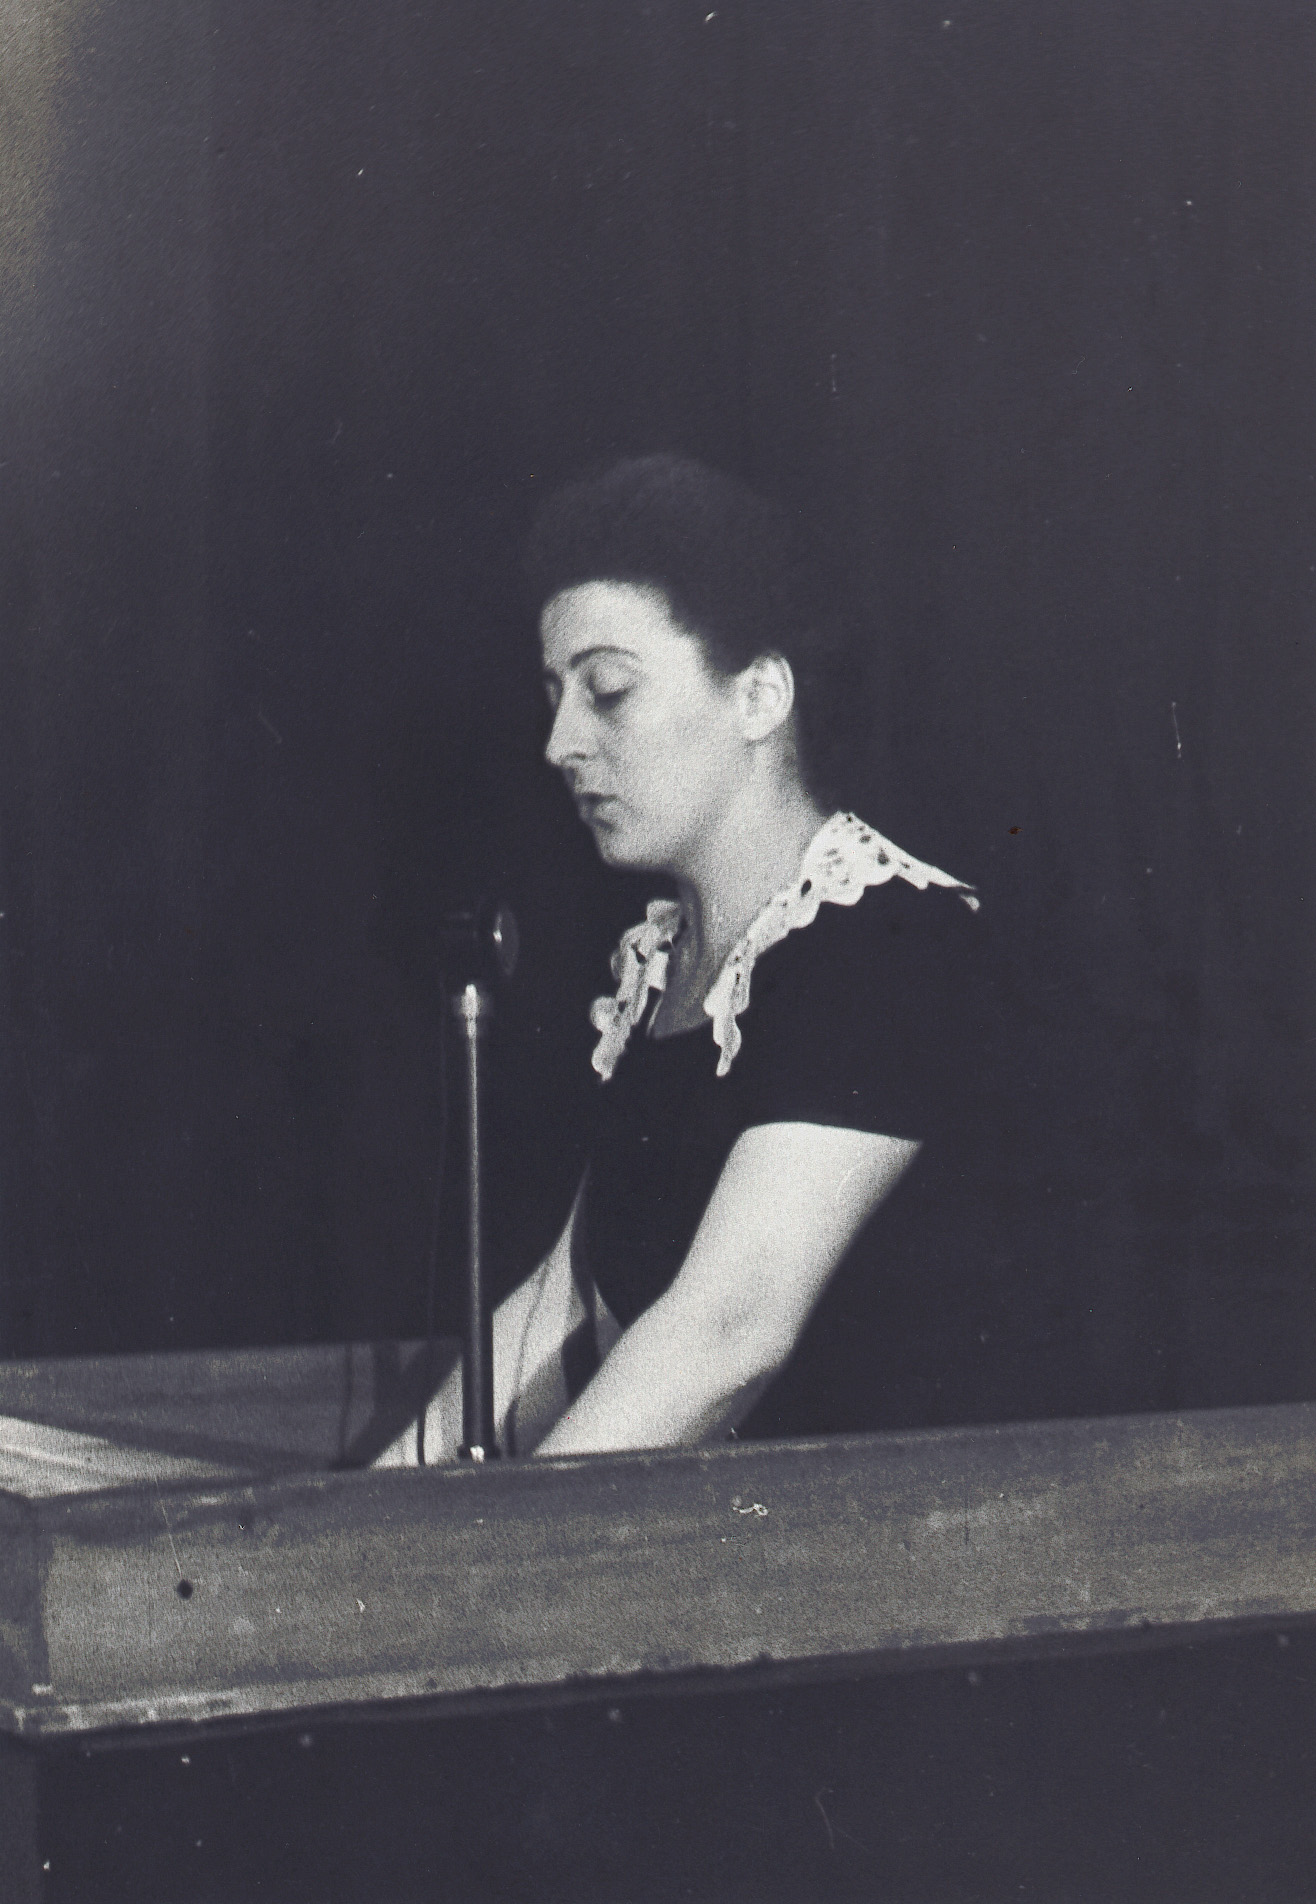 Maria Michetti parla al II Congresso dell’UDI, luglio 1947, Immagine di pubblico dominio
